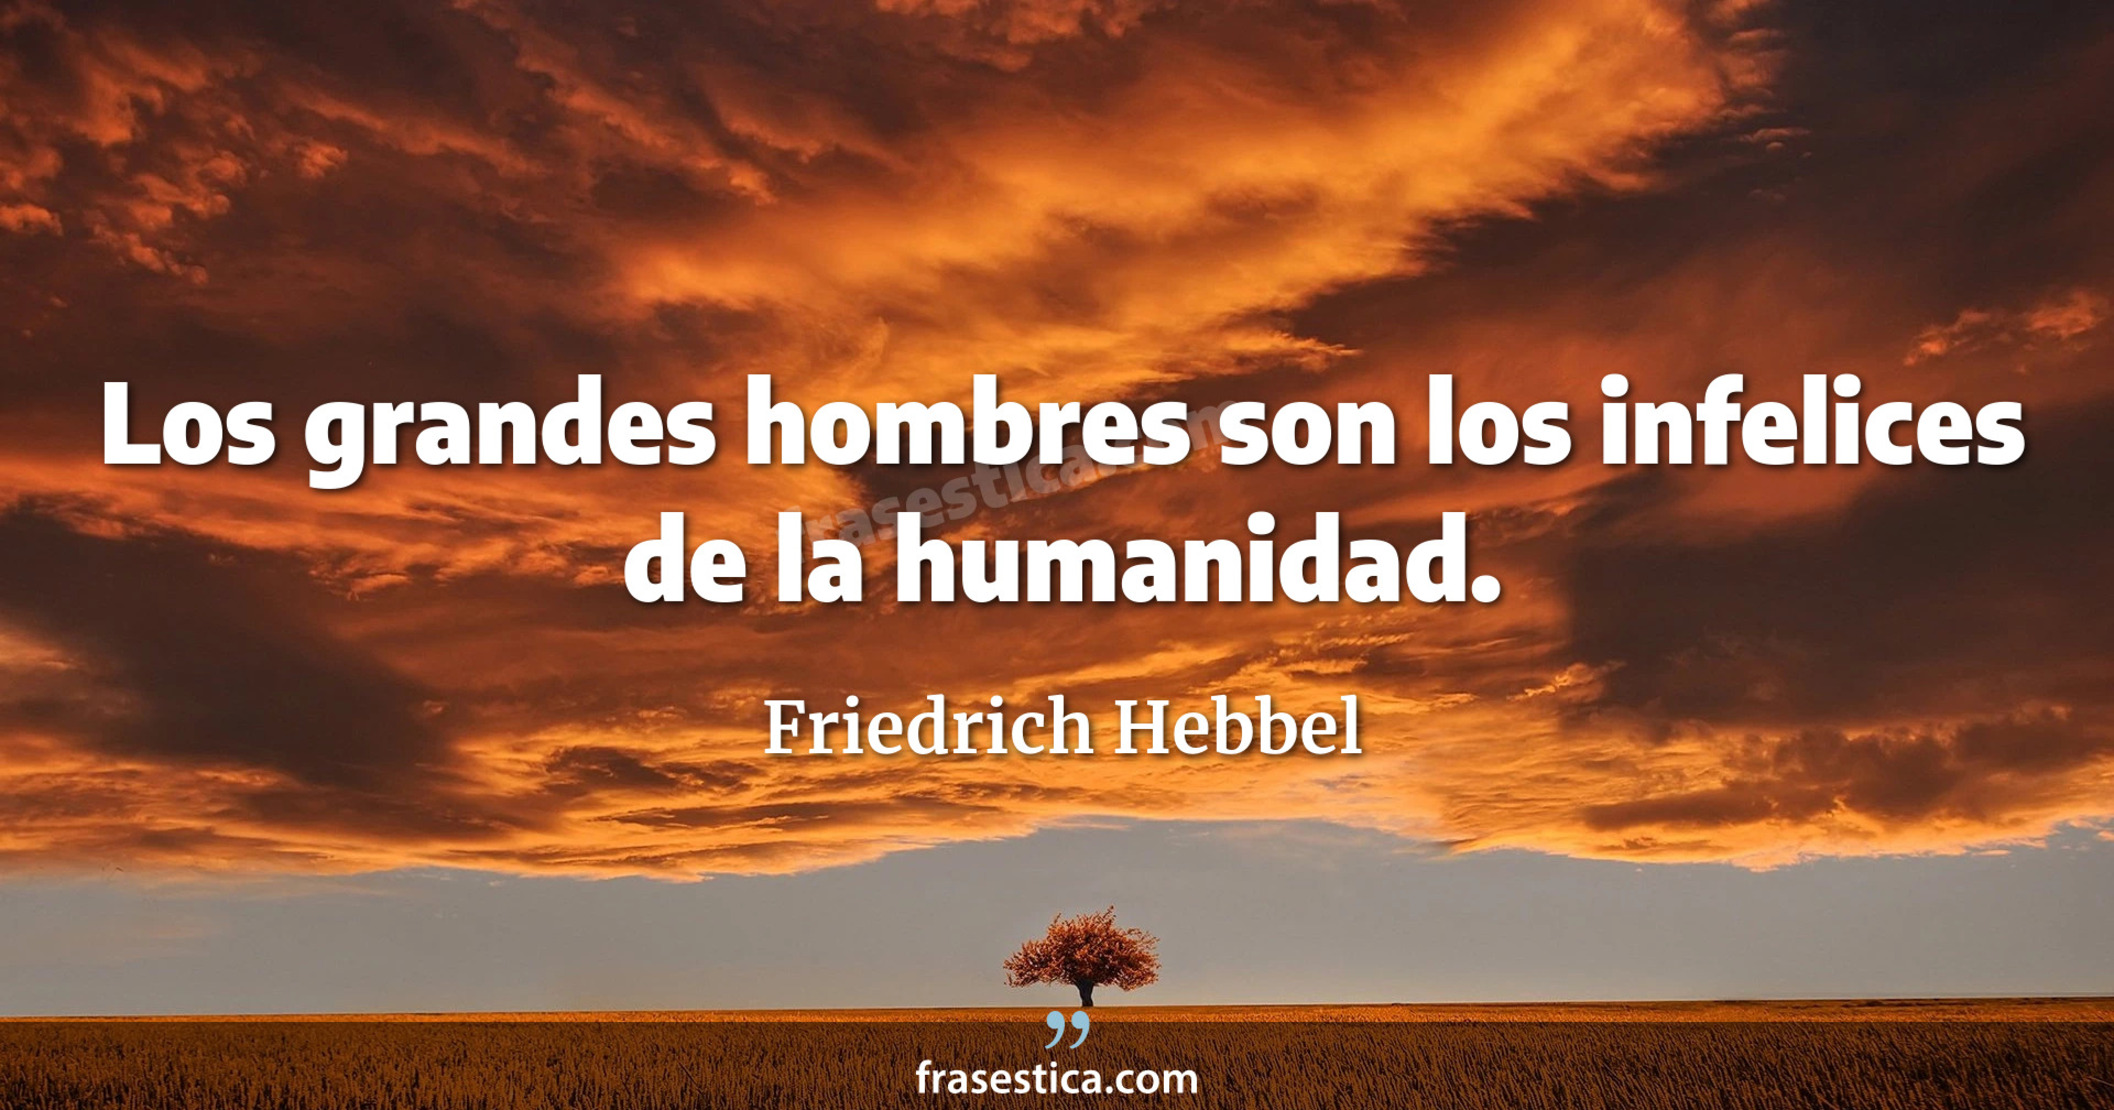 Los grandes hombres son los infelices de la humanidad. - Friedrich Hebbel